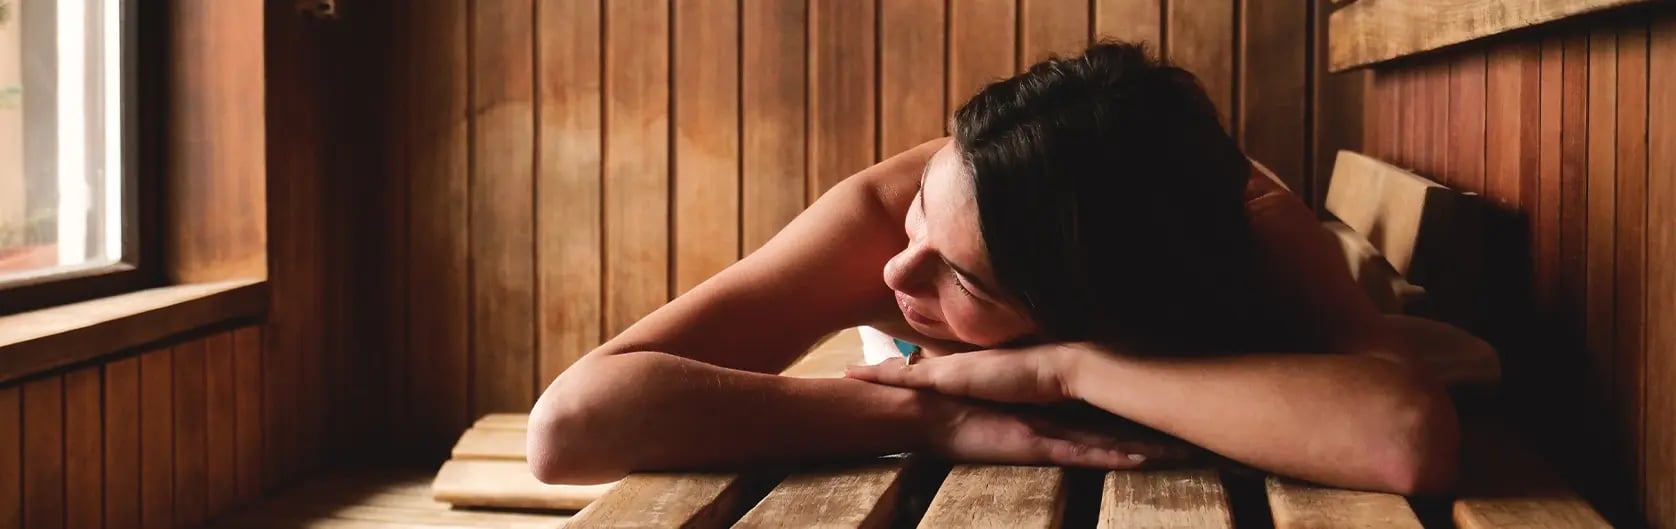 How to create a sauna ritual